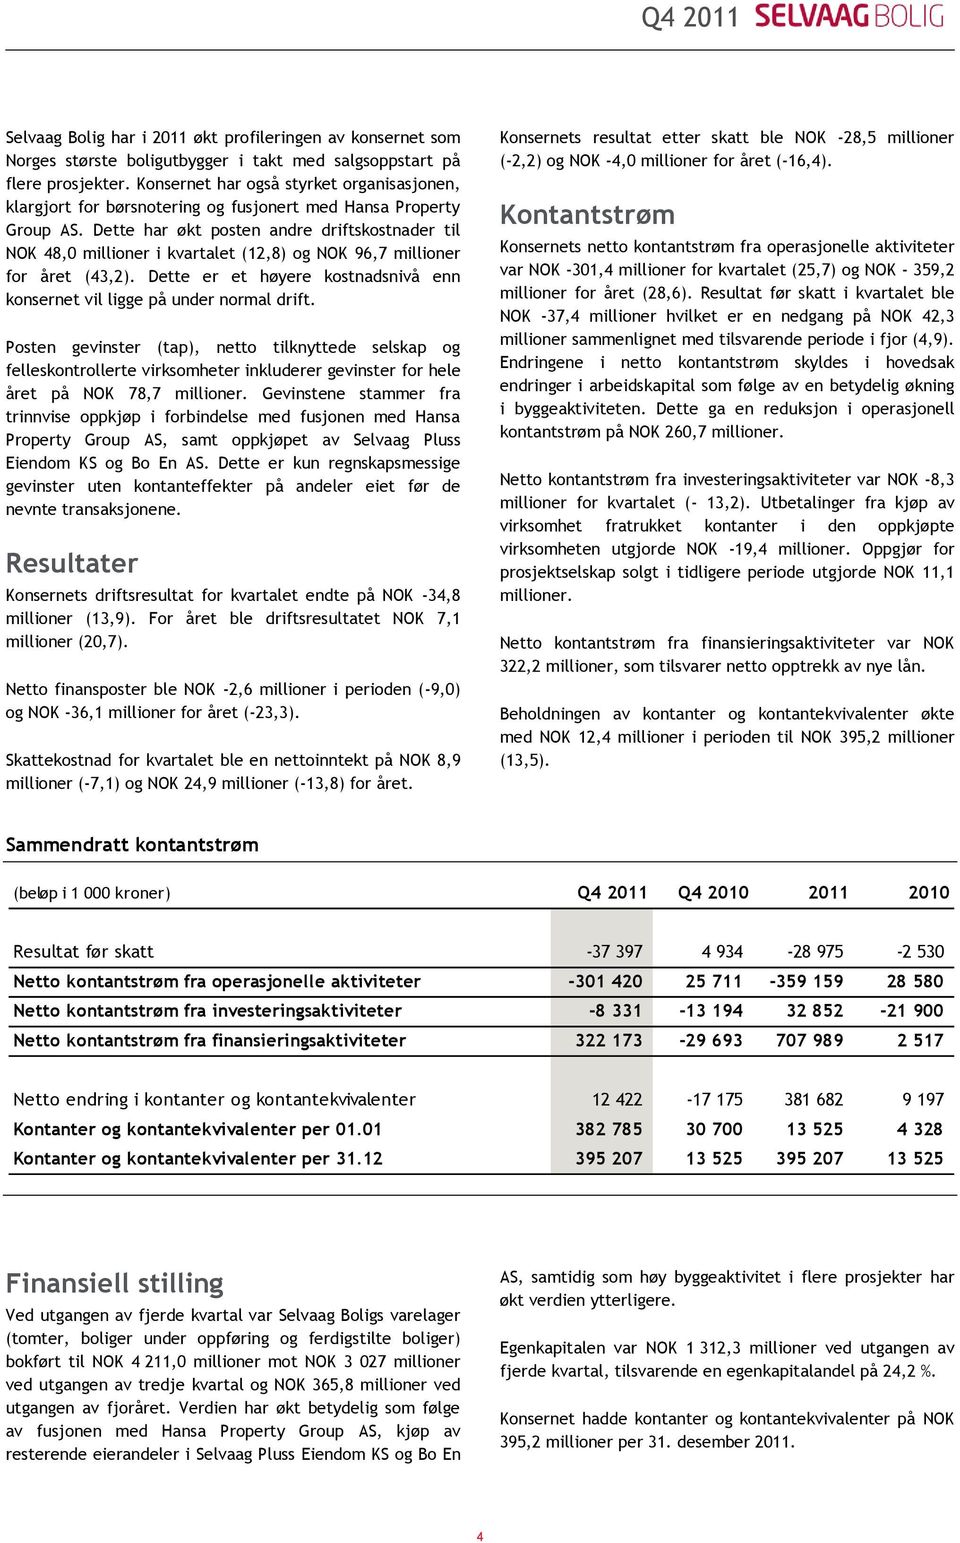 Dette har økt posten andre driftskostnader til NOK 48,0 millioner i kvartalet (12,8) og NOK 96,7 millioner for året (43,2).